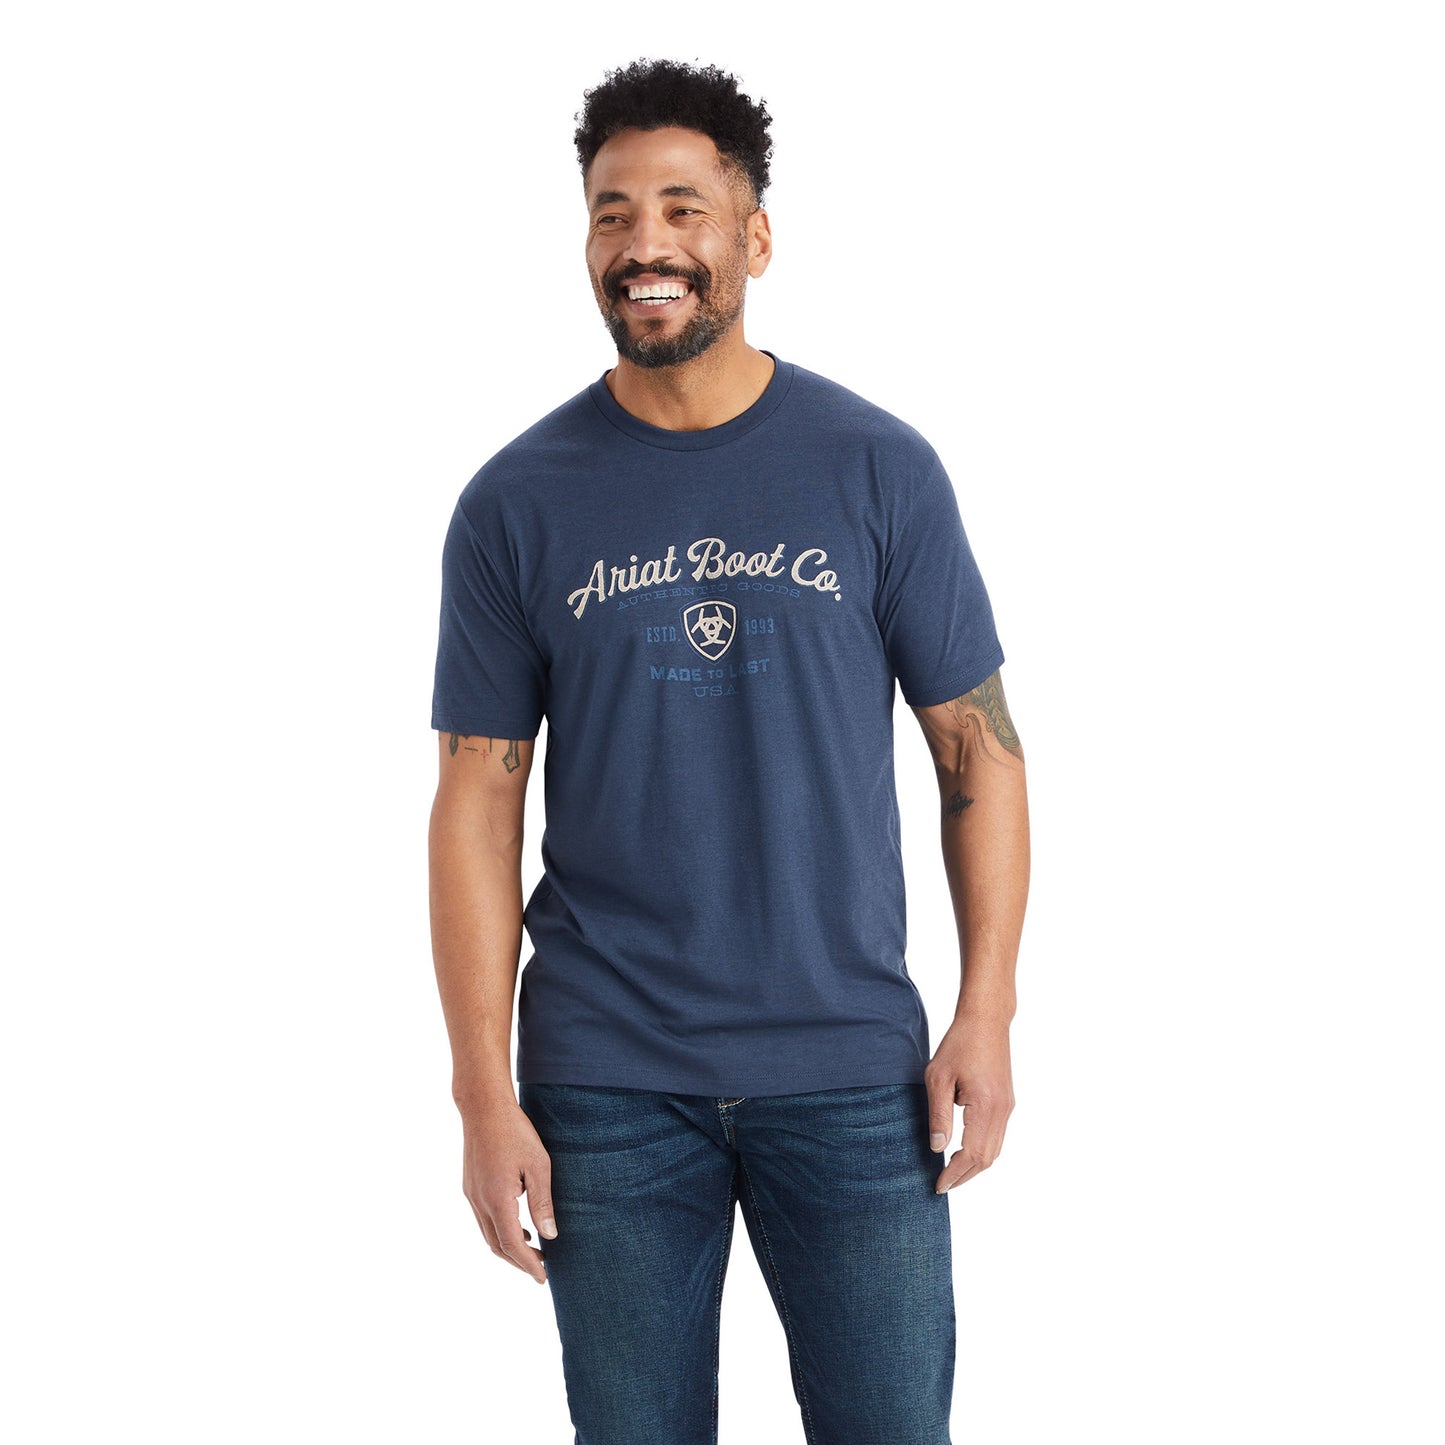 Ariat® Men's Navy Heather Type Crest Graphic T-Shirt 10042638